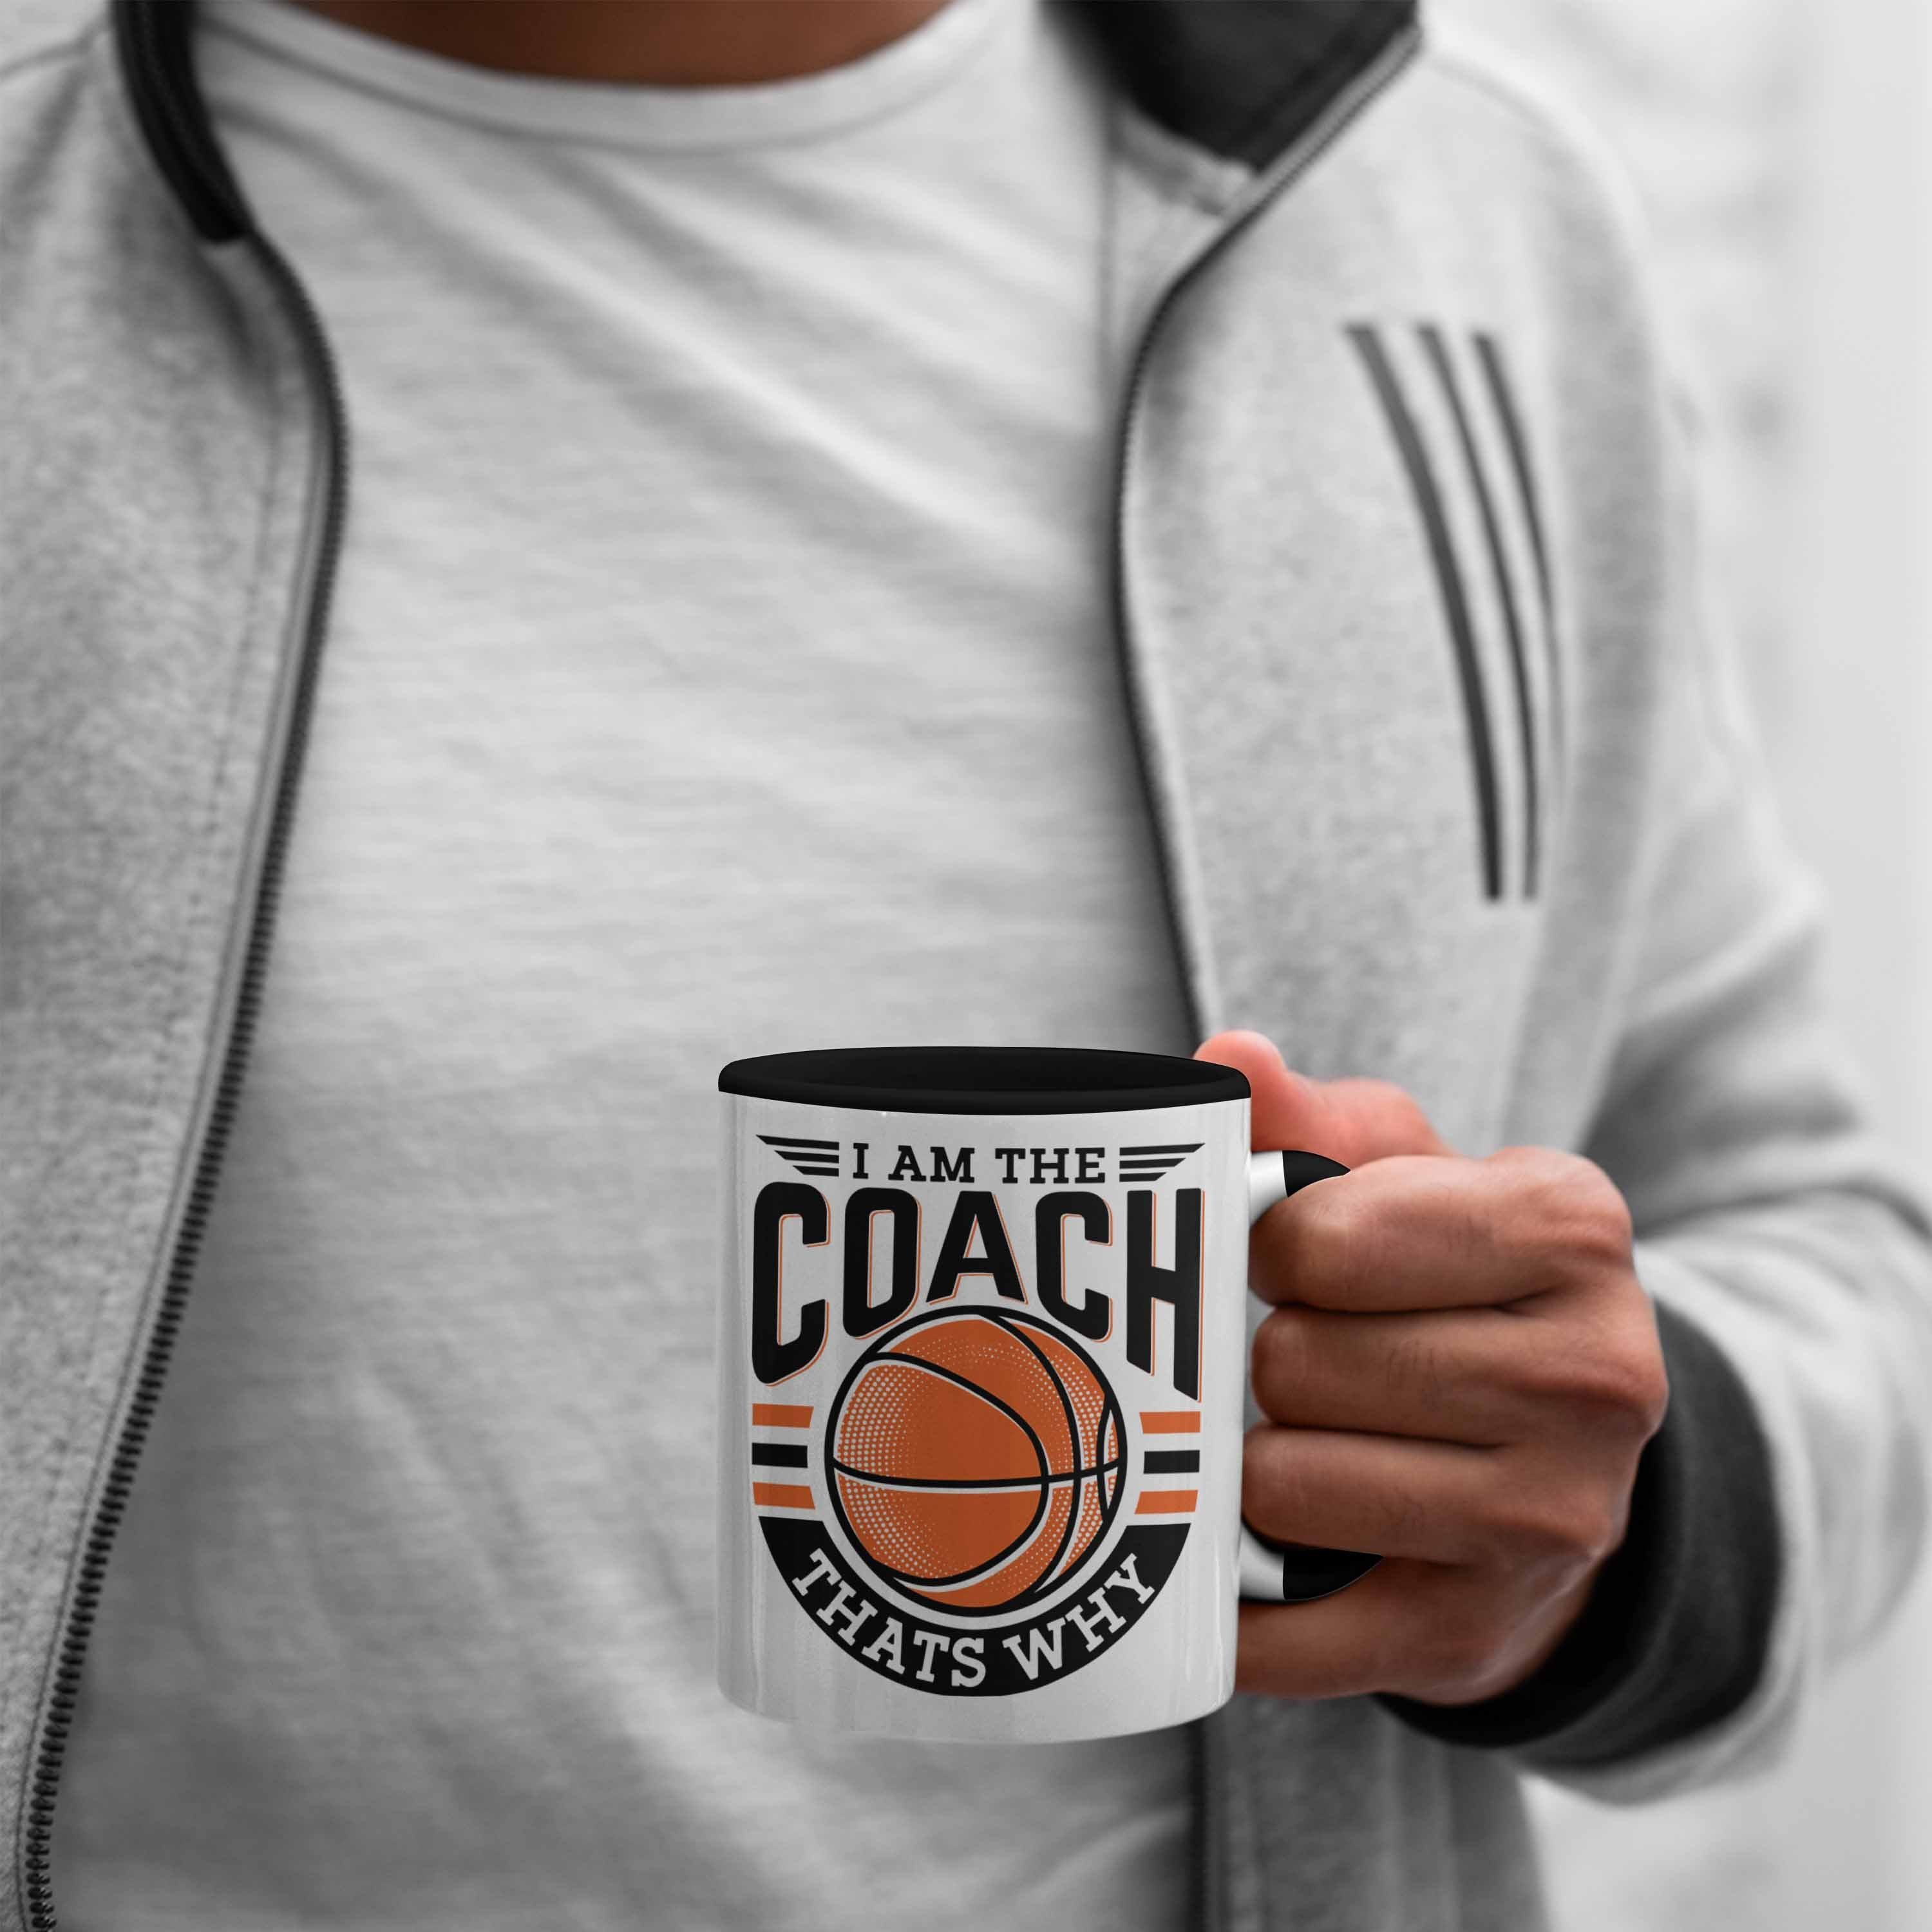 Coach Thats Trendation I Schwarz The Basketball-Trainer Wh Tasse Geschenk Coach Tasse Lustig Am